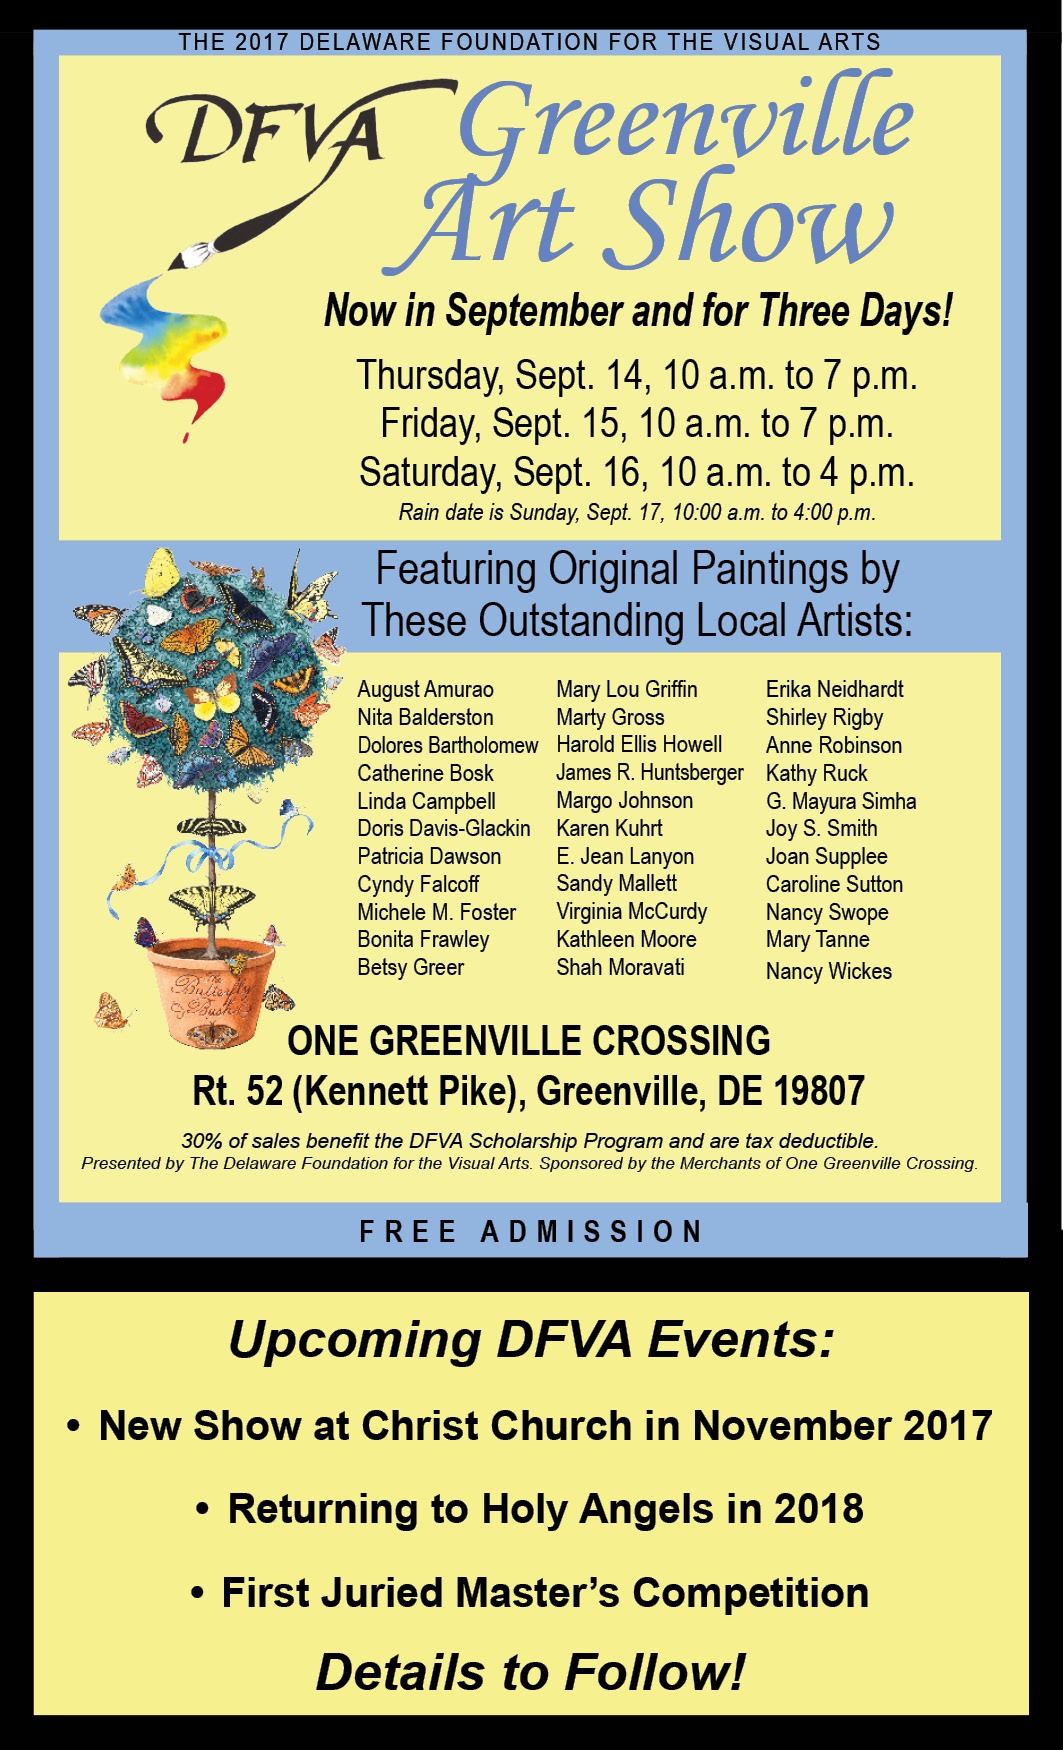 The DFVA Greenville Fall Outdoor Art Show